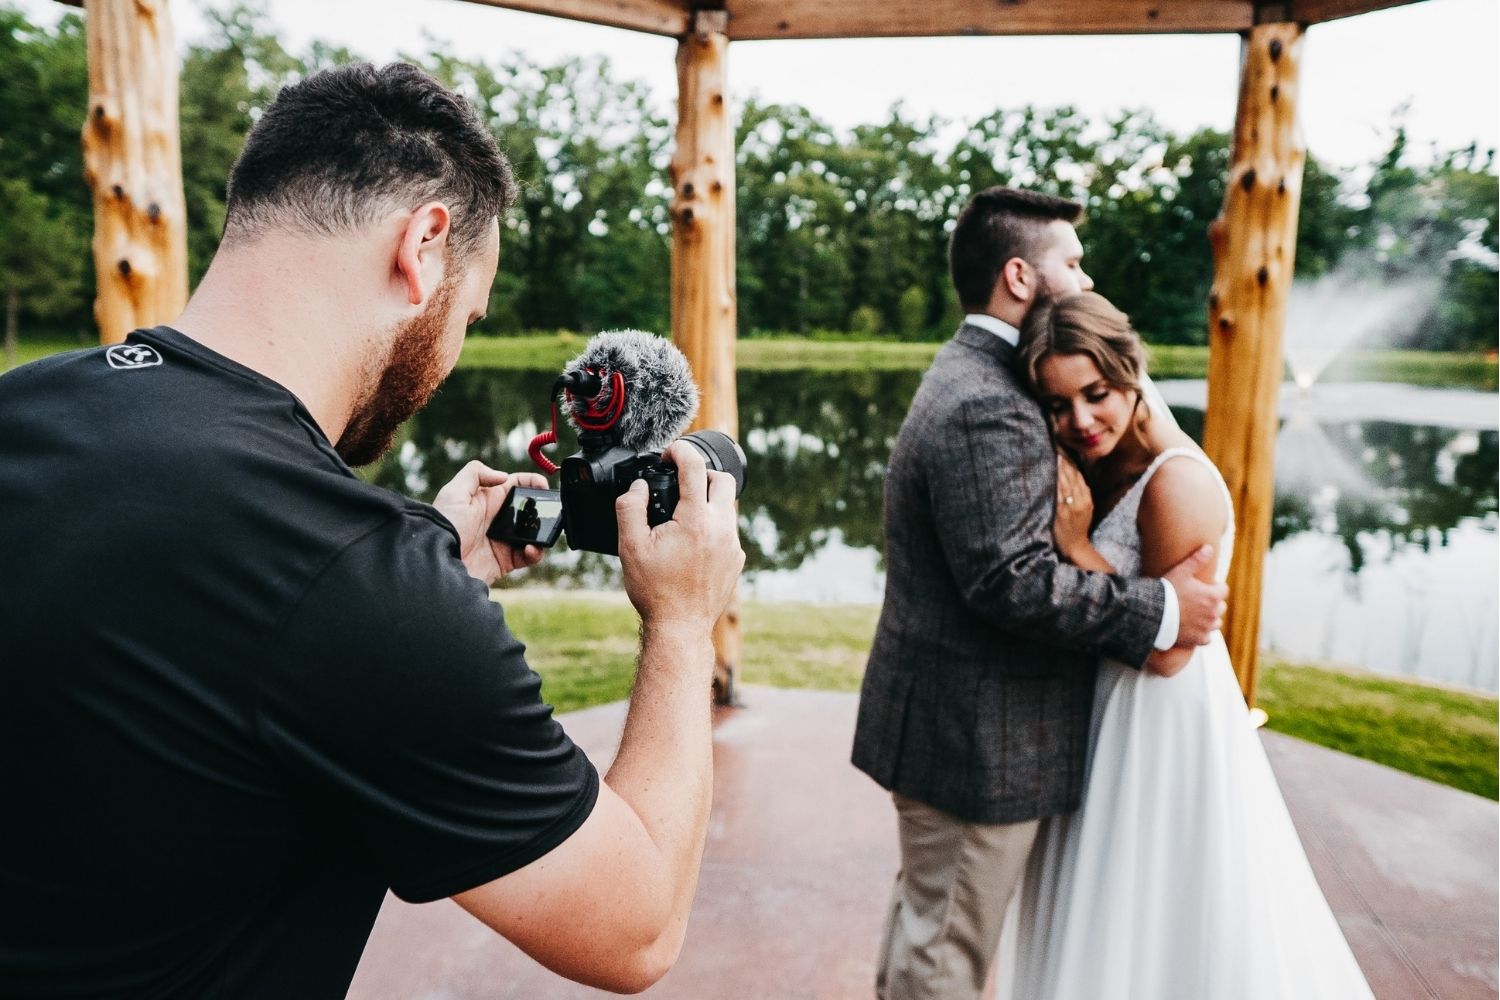 Mať na svadbe svadobného kameramana alebo stačí profesionálny svadobný fotograf?